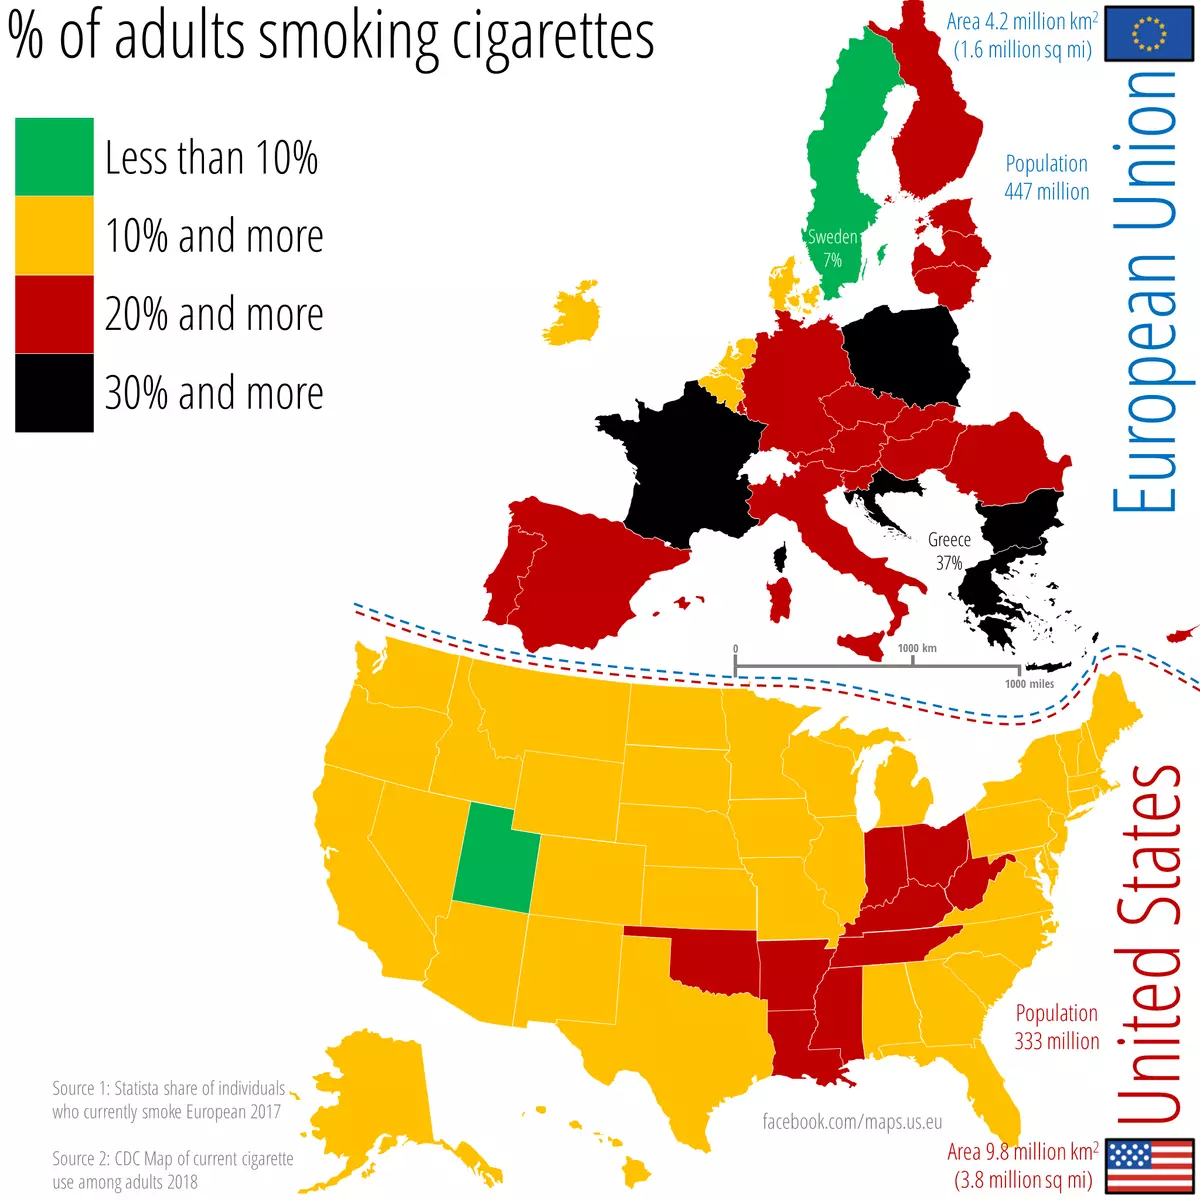 Mapa USA i Europy z kolorami pokazującymi gdzie pali najwięcej dorosłych